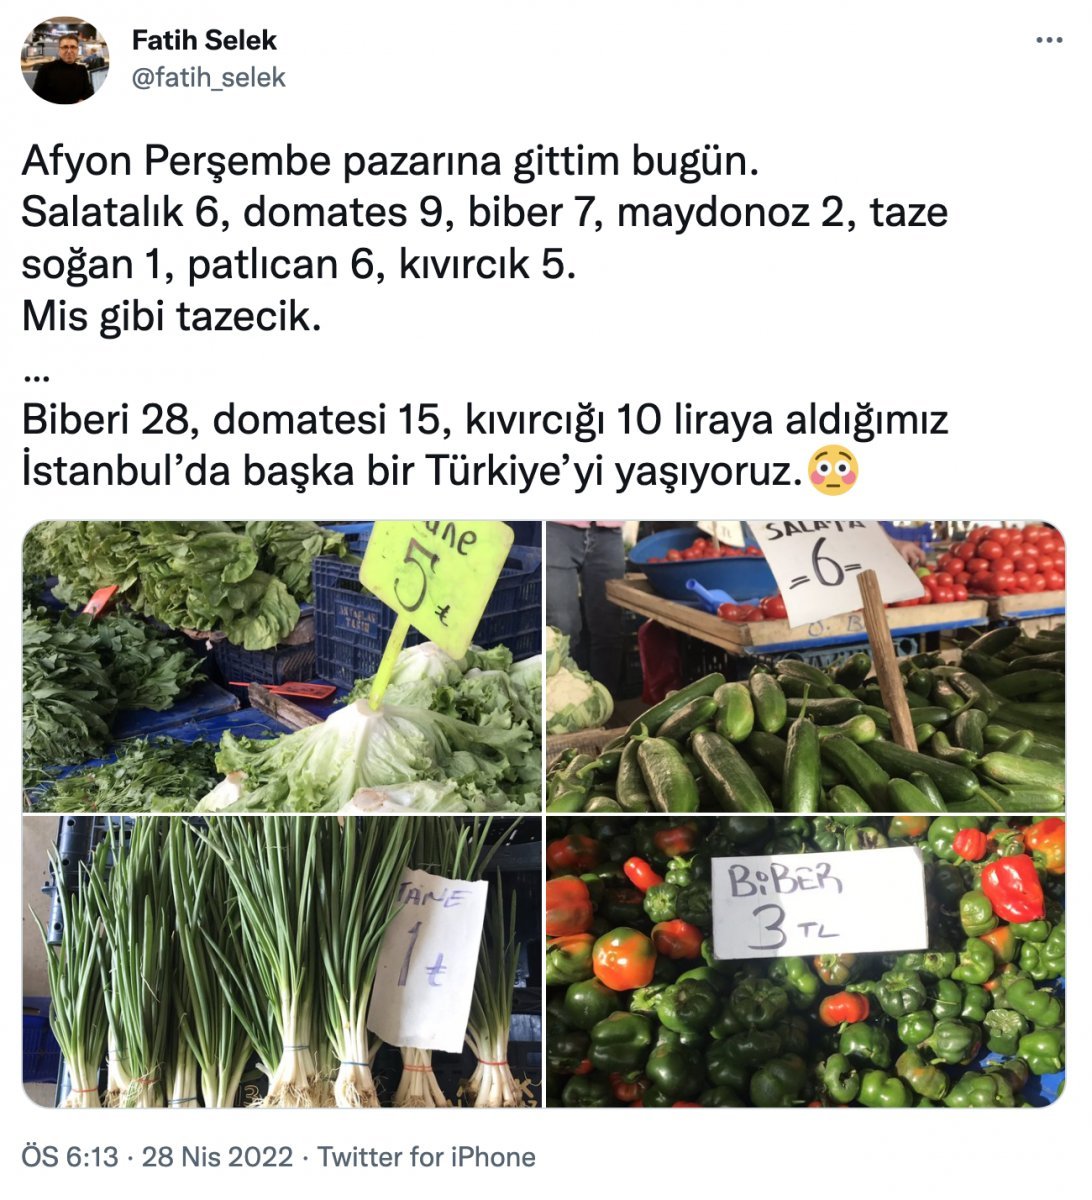 İstanbul da fiyatı uçan sebzeler Anadolu da yarı fiyatına #1